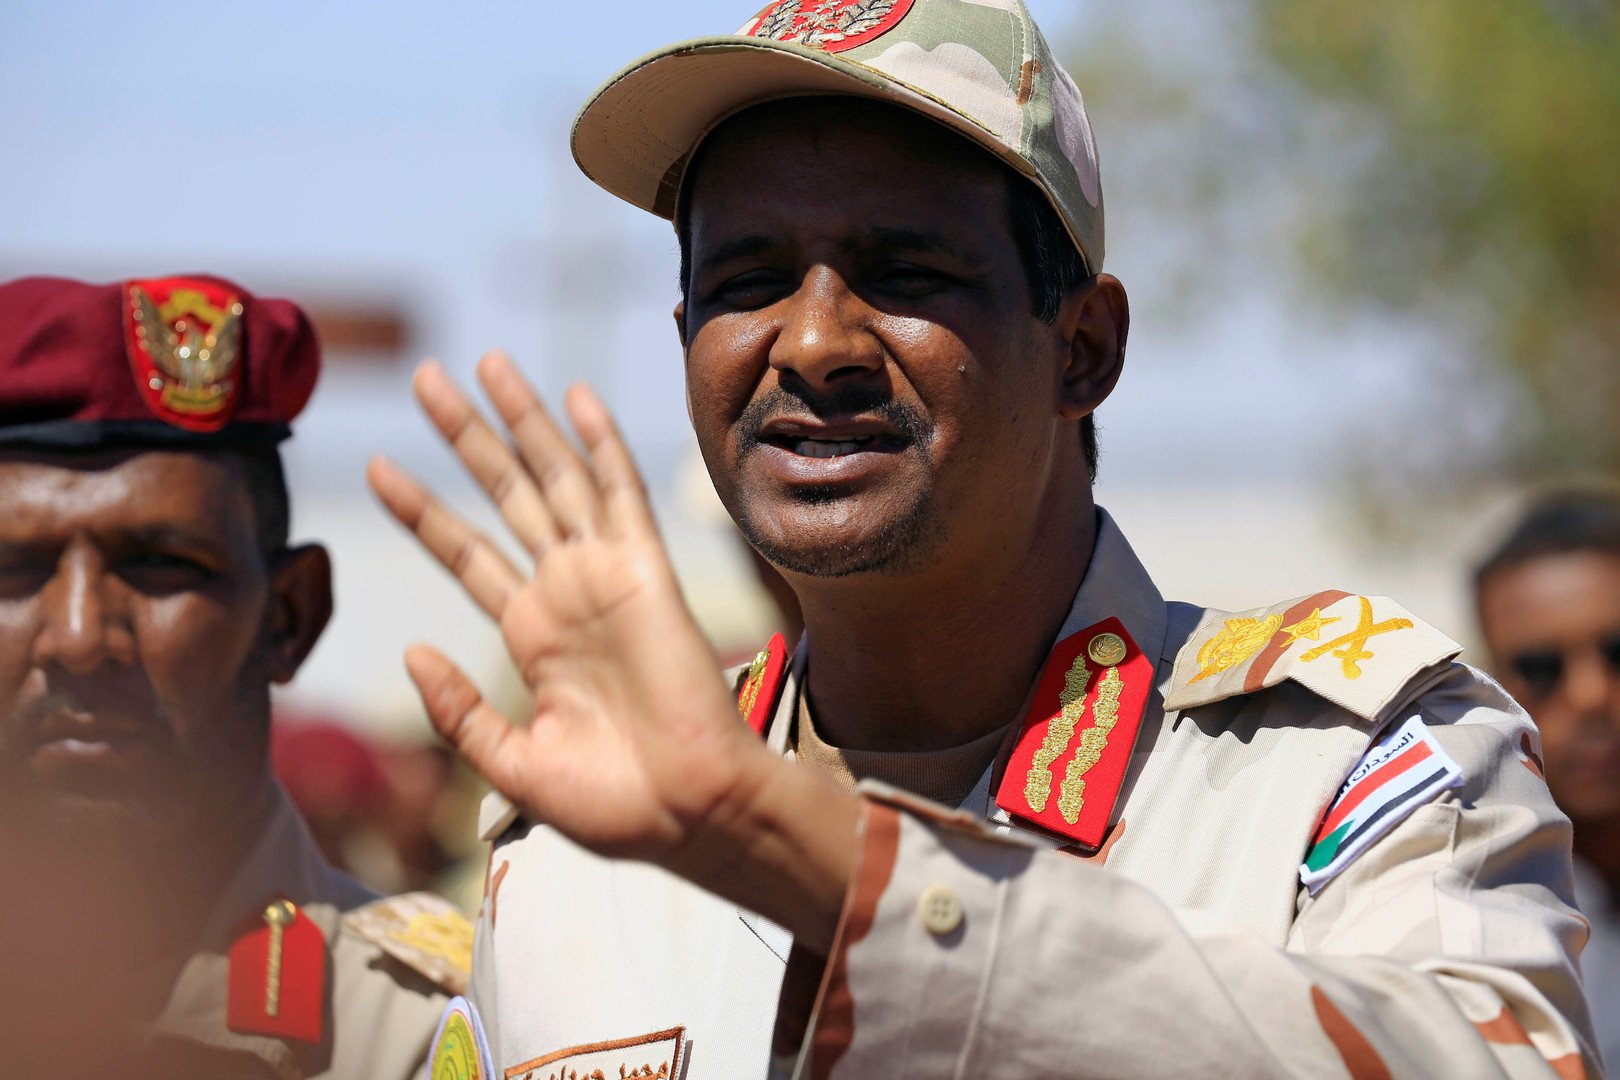 المجلس العسكري السوداني: سنشكل حكومة تكنوقراط بأقصى سرعة